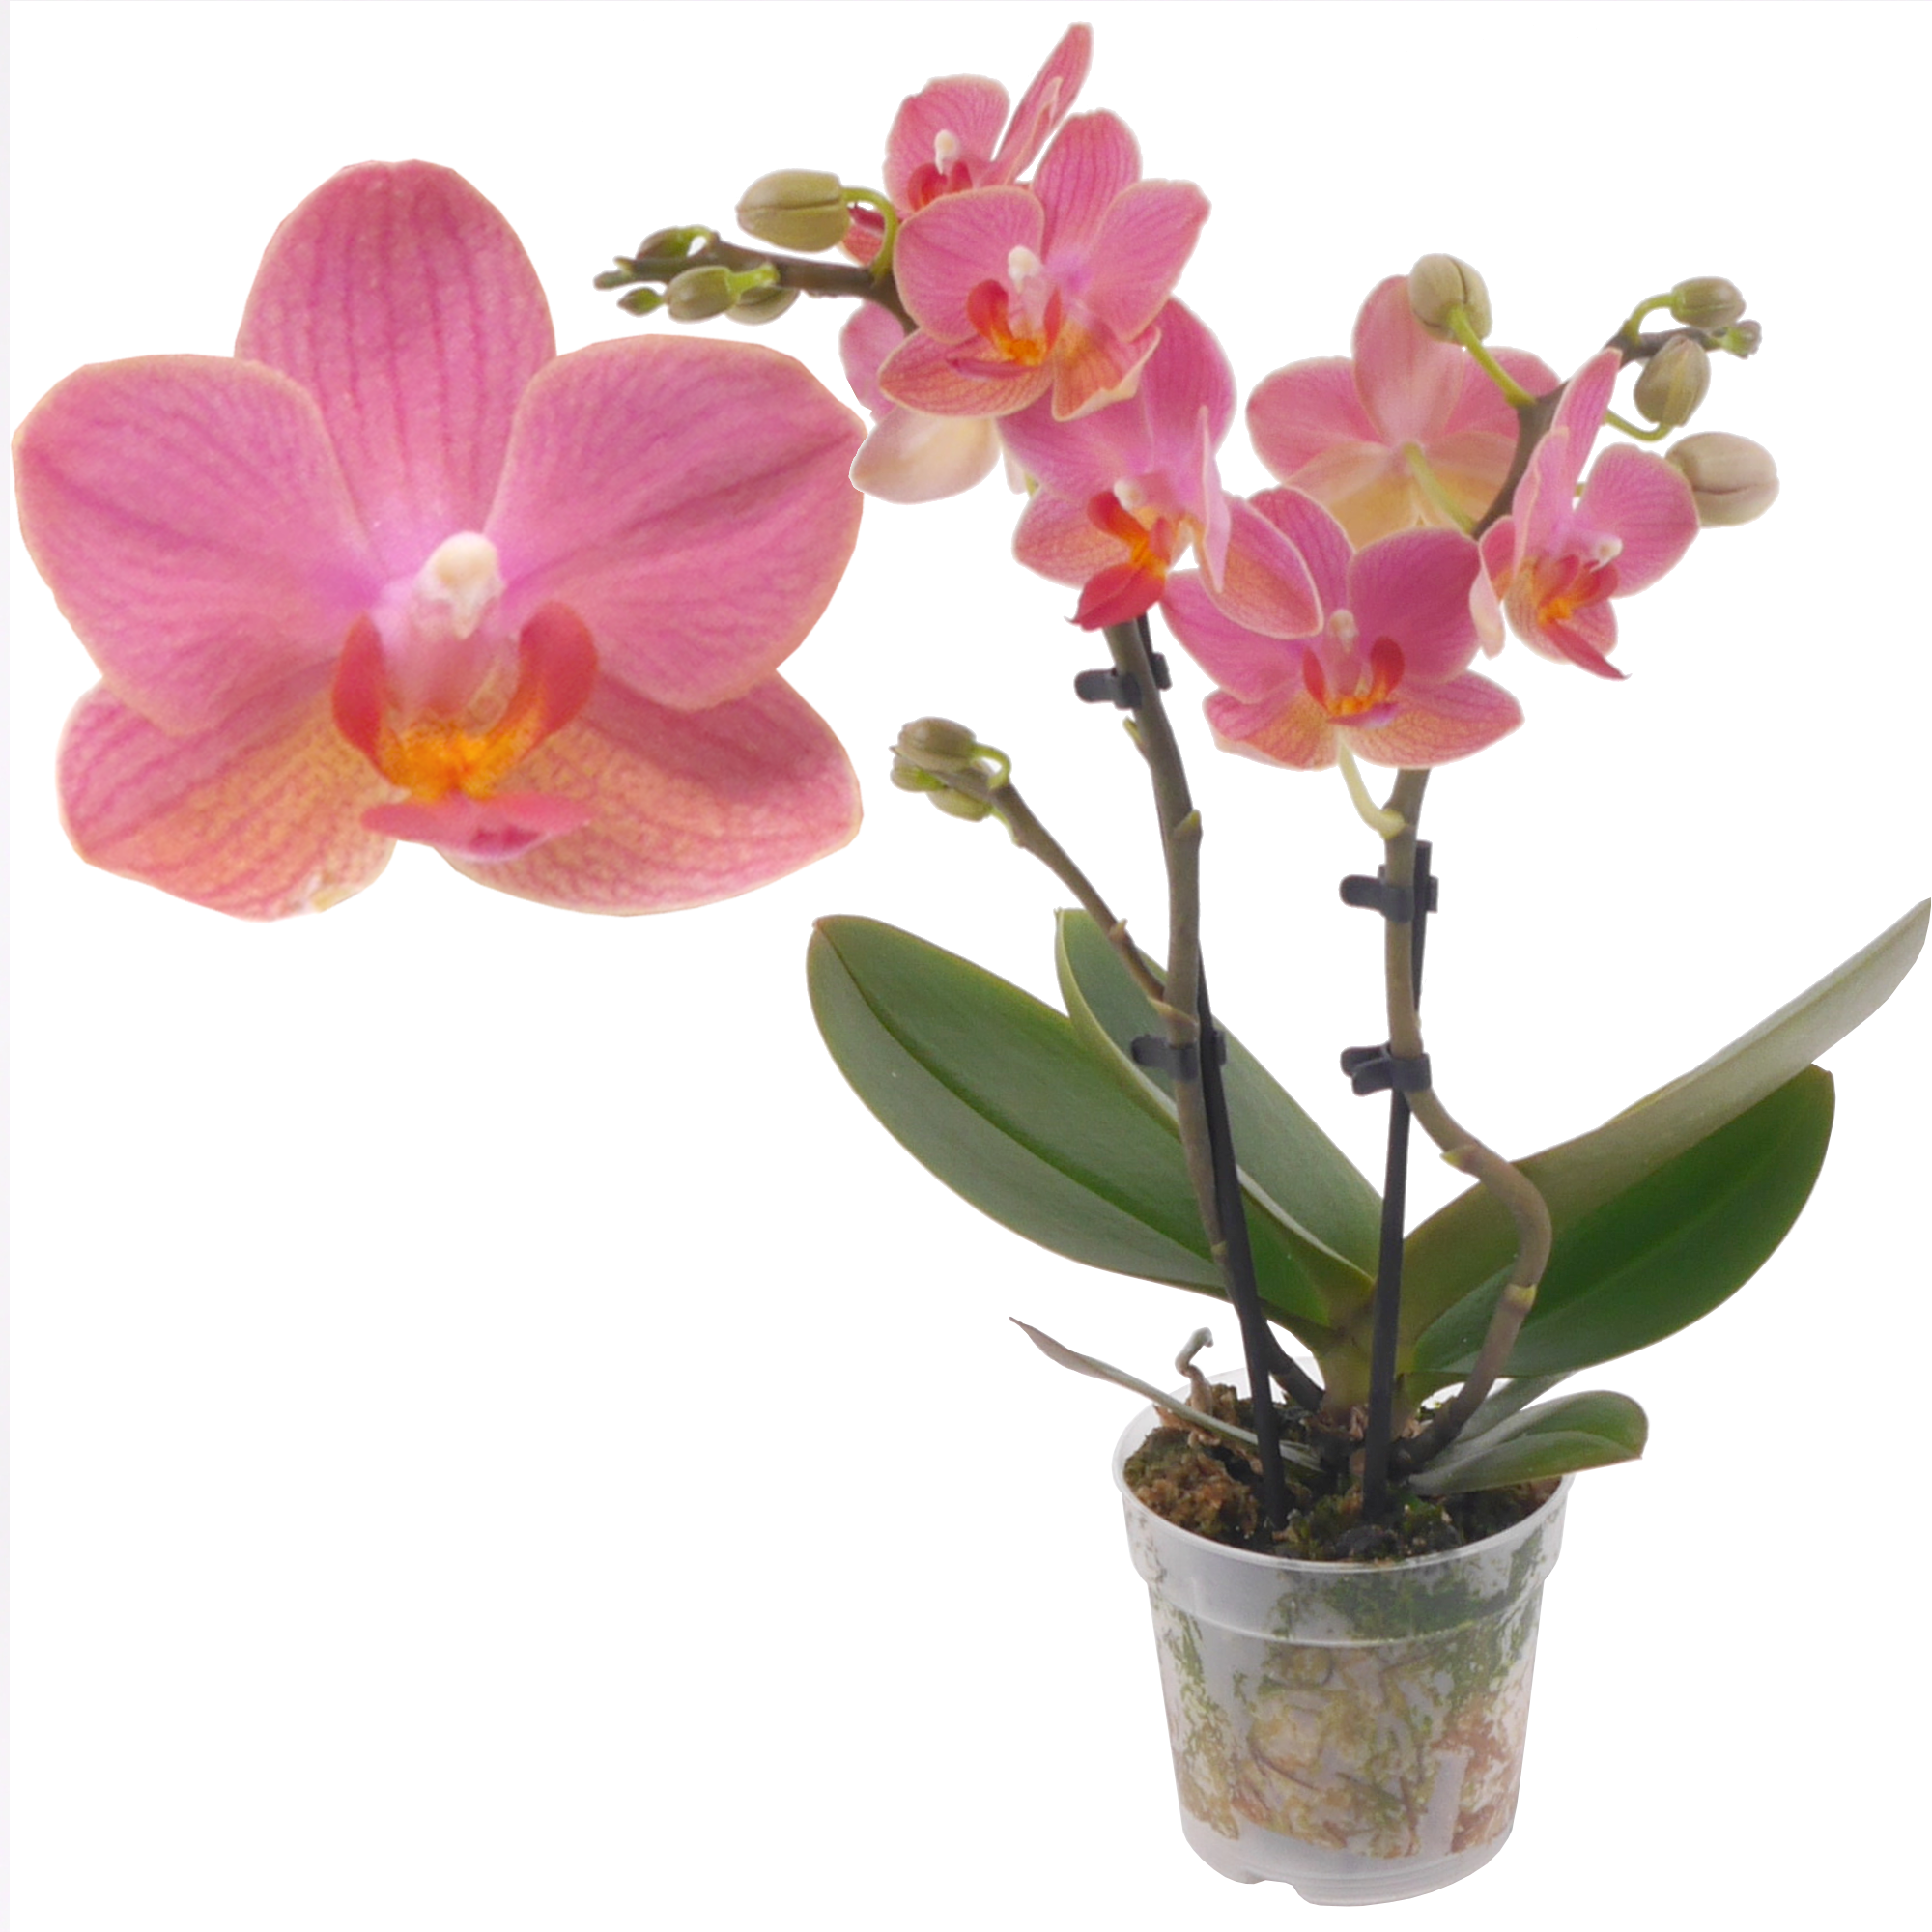 Schmetterlingsorchidee 2 Rispen 'Gwen' orange/pink, 7 cm Topf + product picture